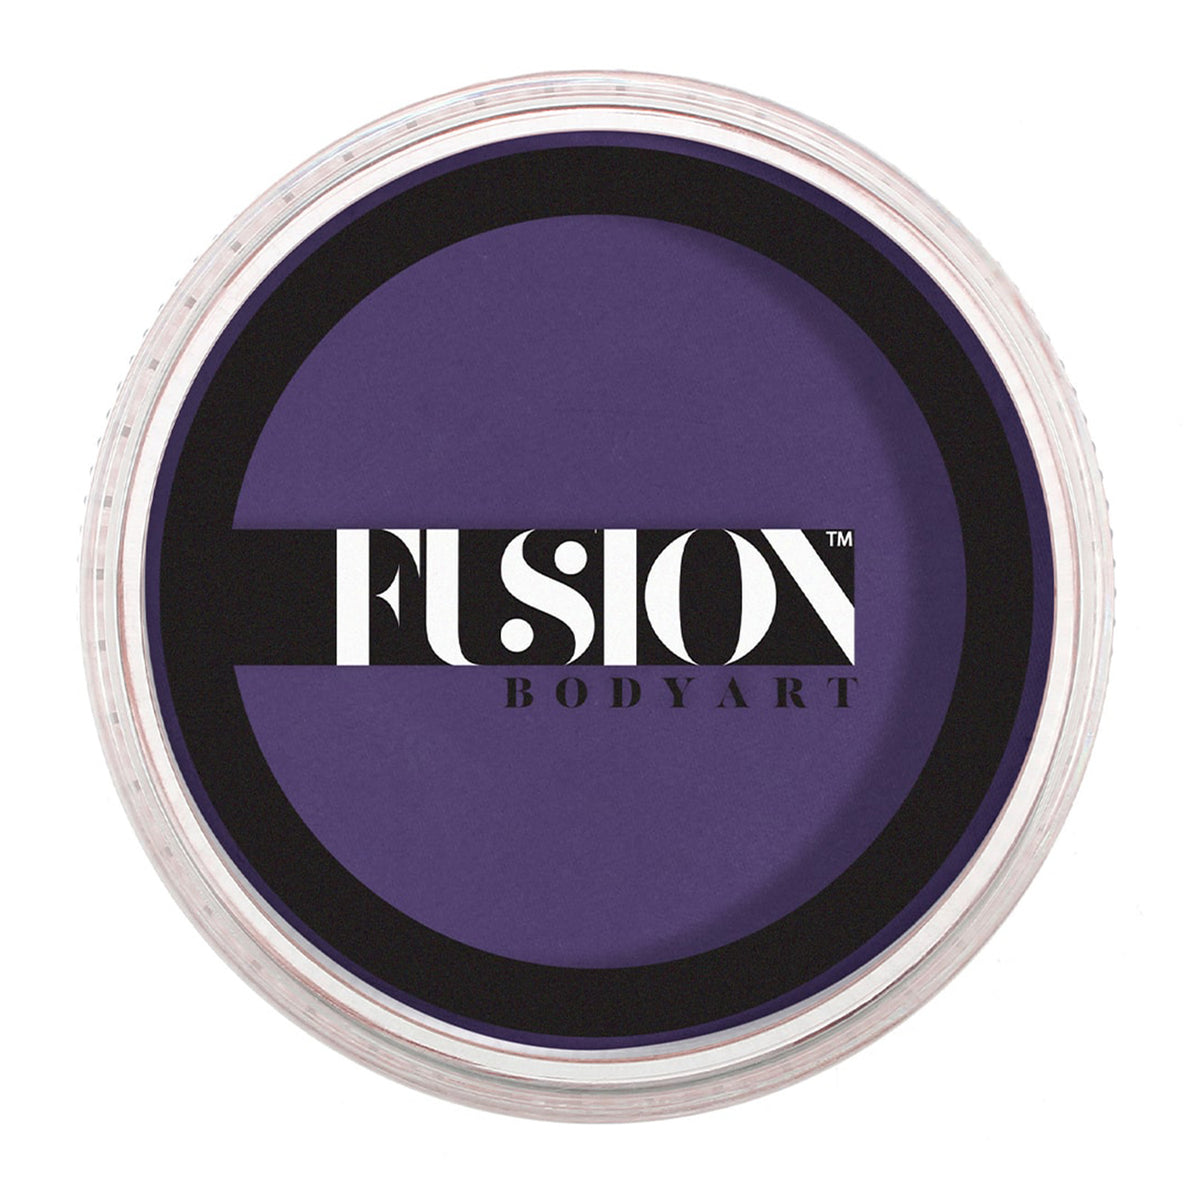 Fusion Body Art Face Paint - Prime Purple Passion